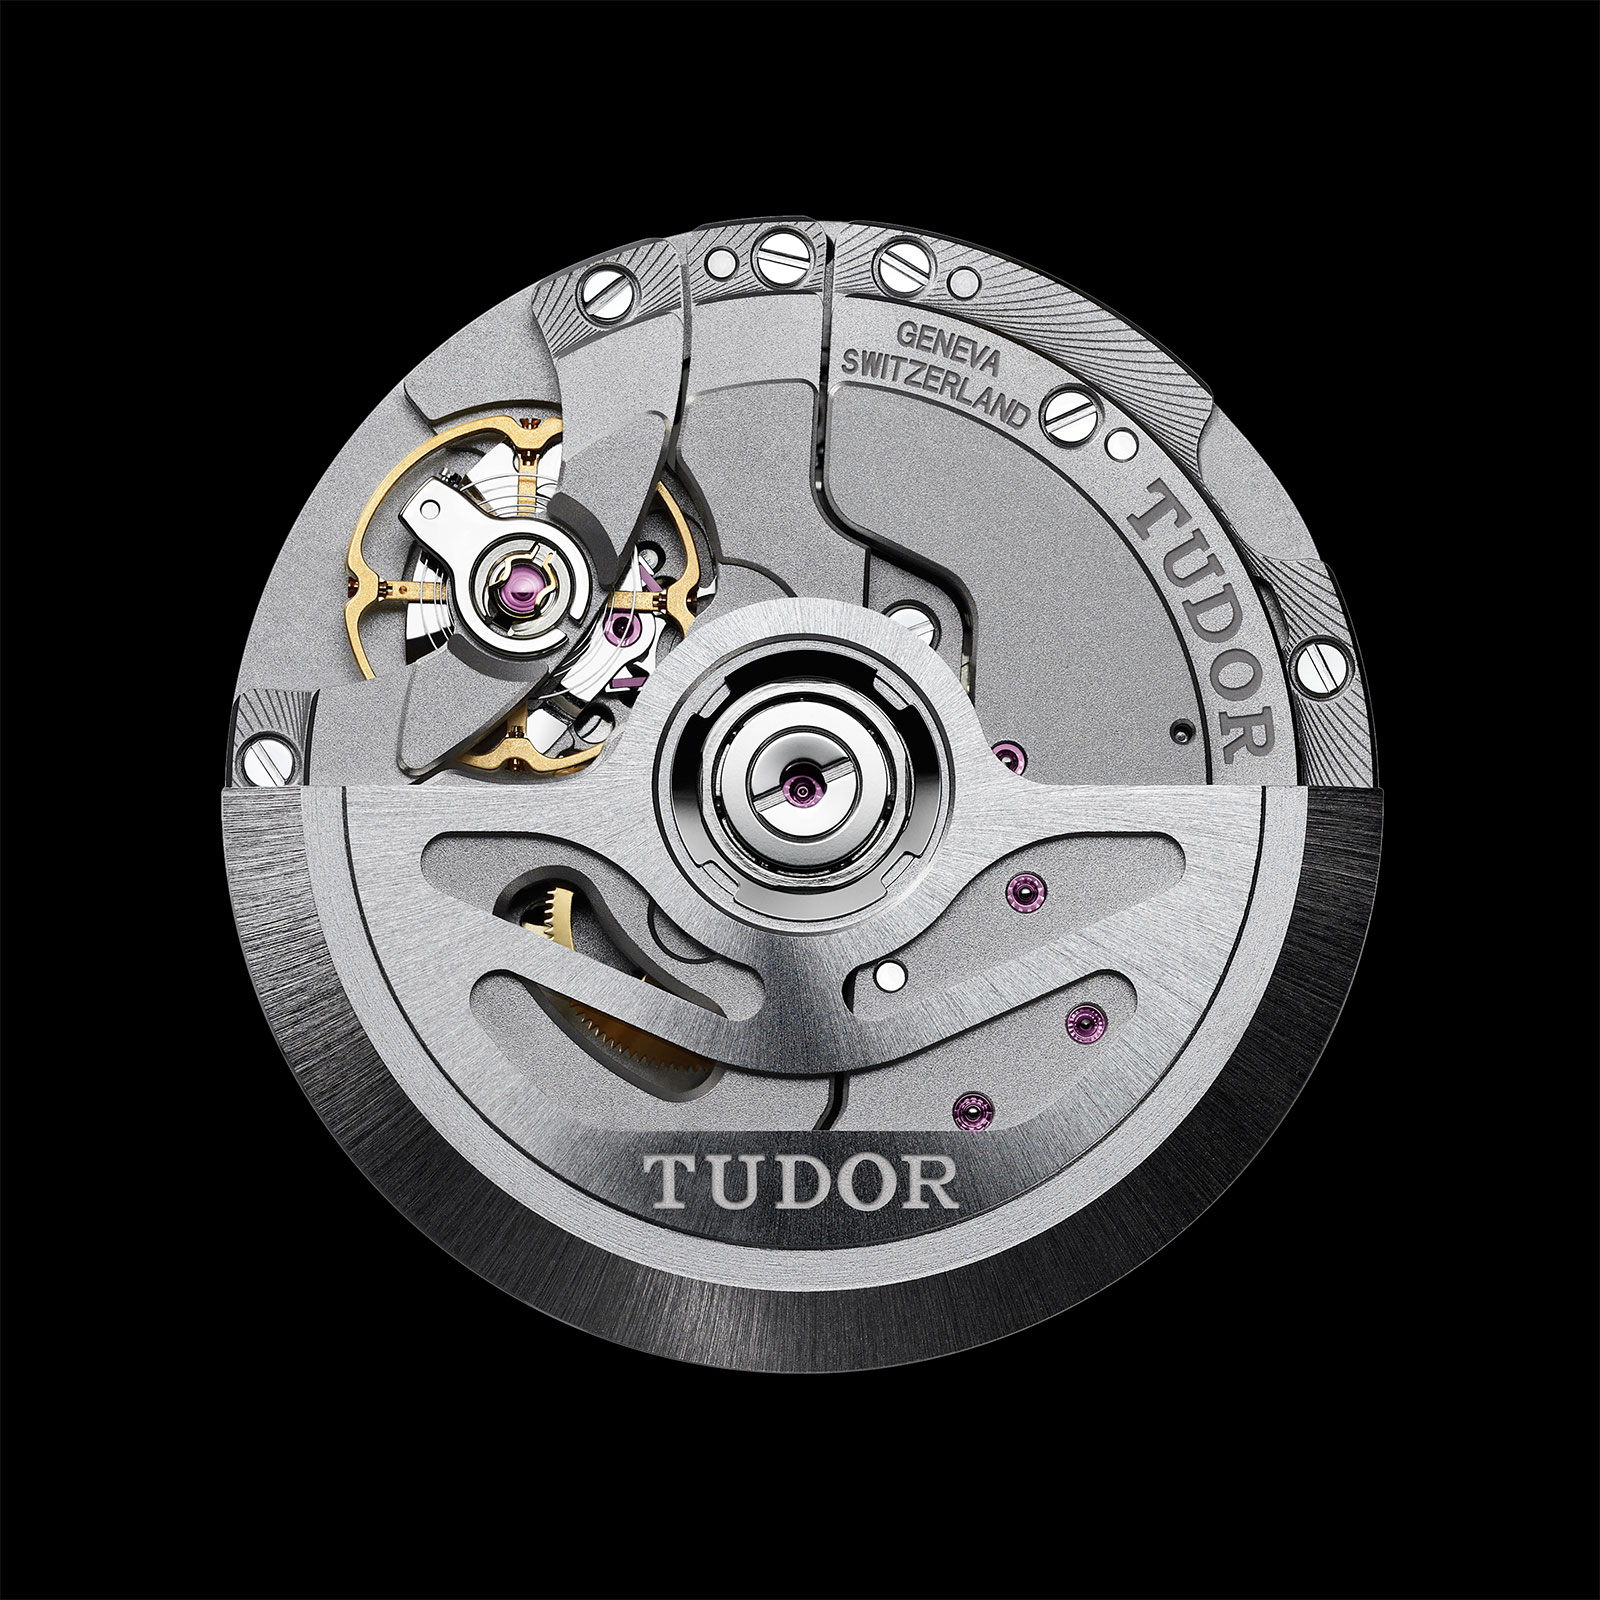 Tudor MT5652 movement